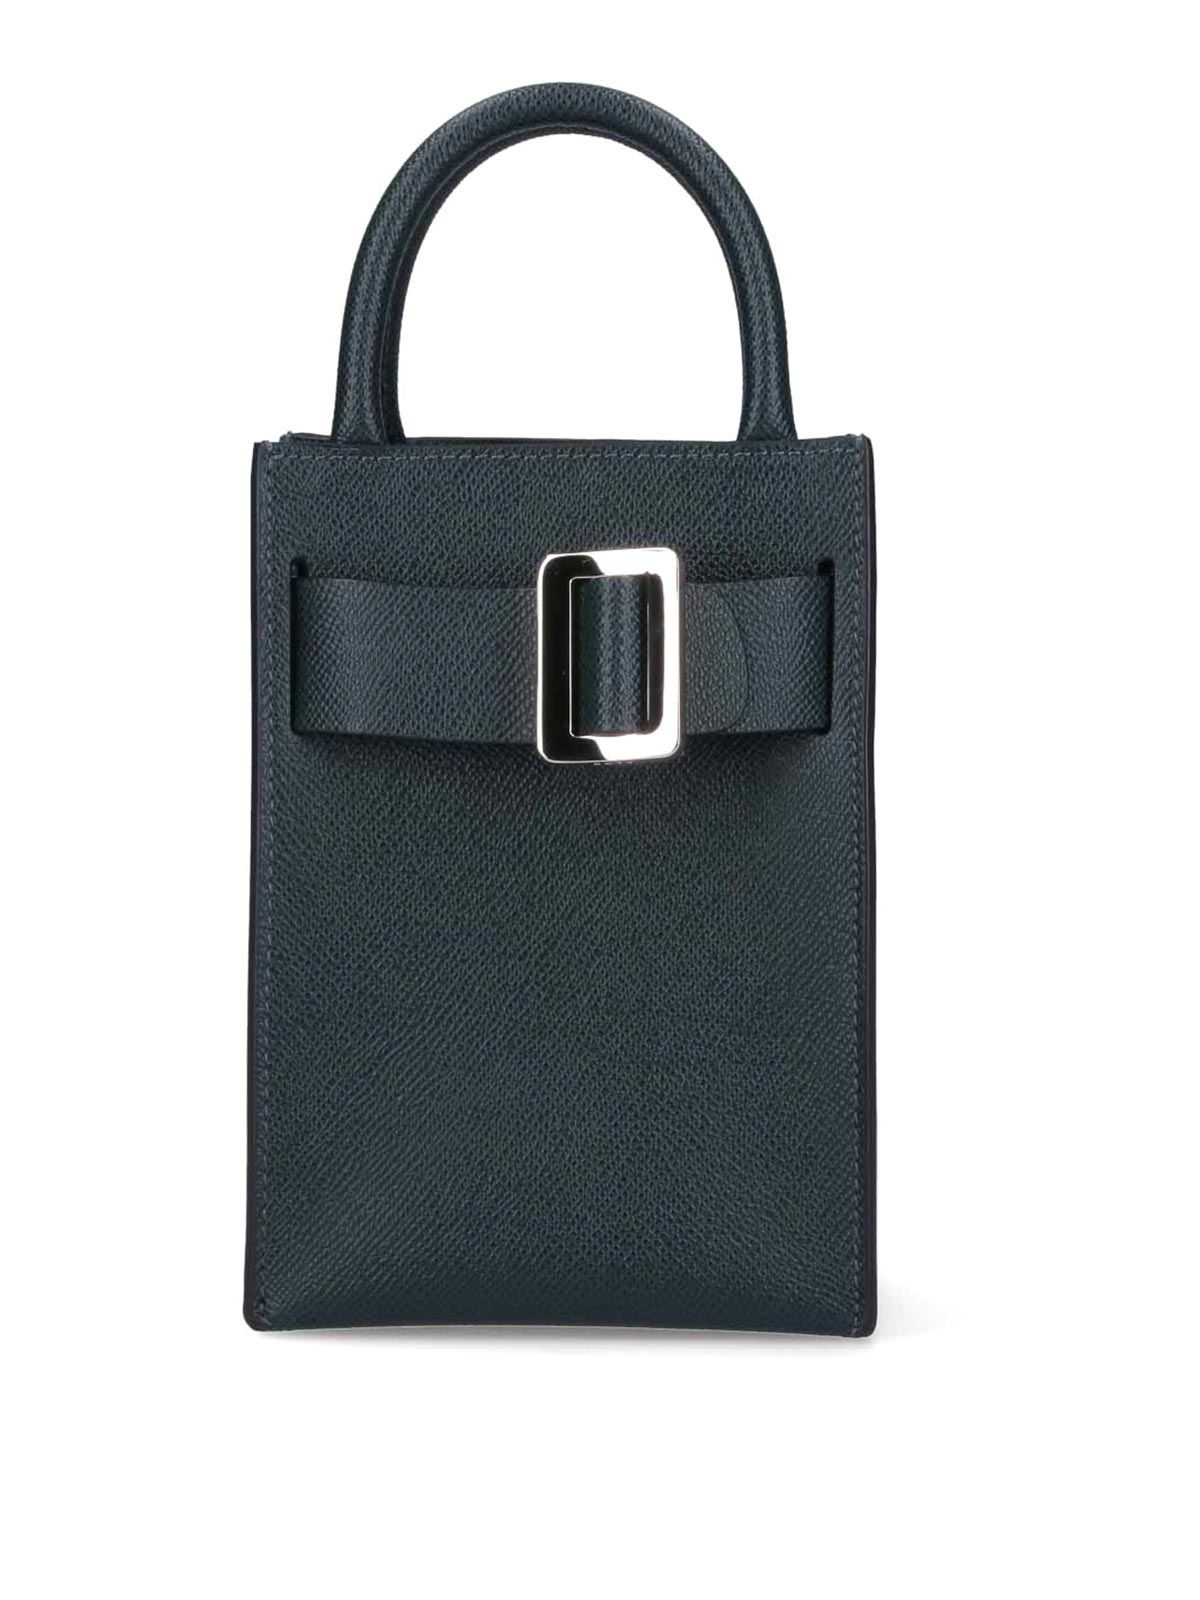 Designer Clutch Bags | Luxury Leather Clutch Bags - BOYY ™